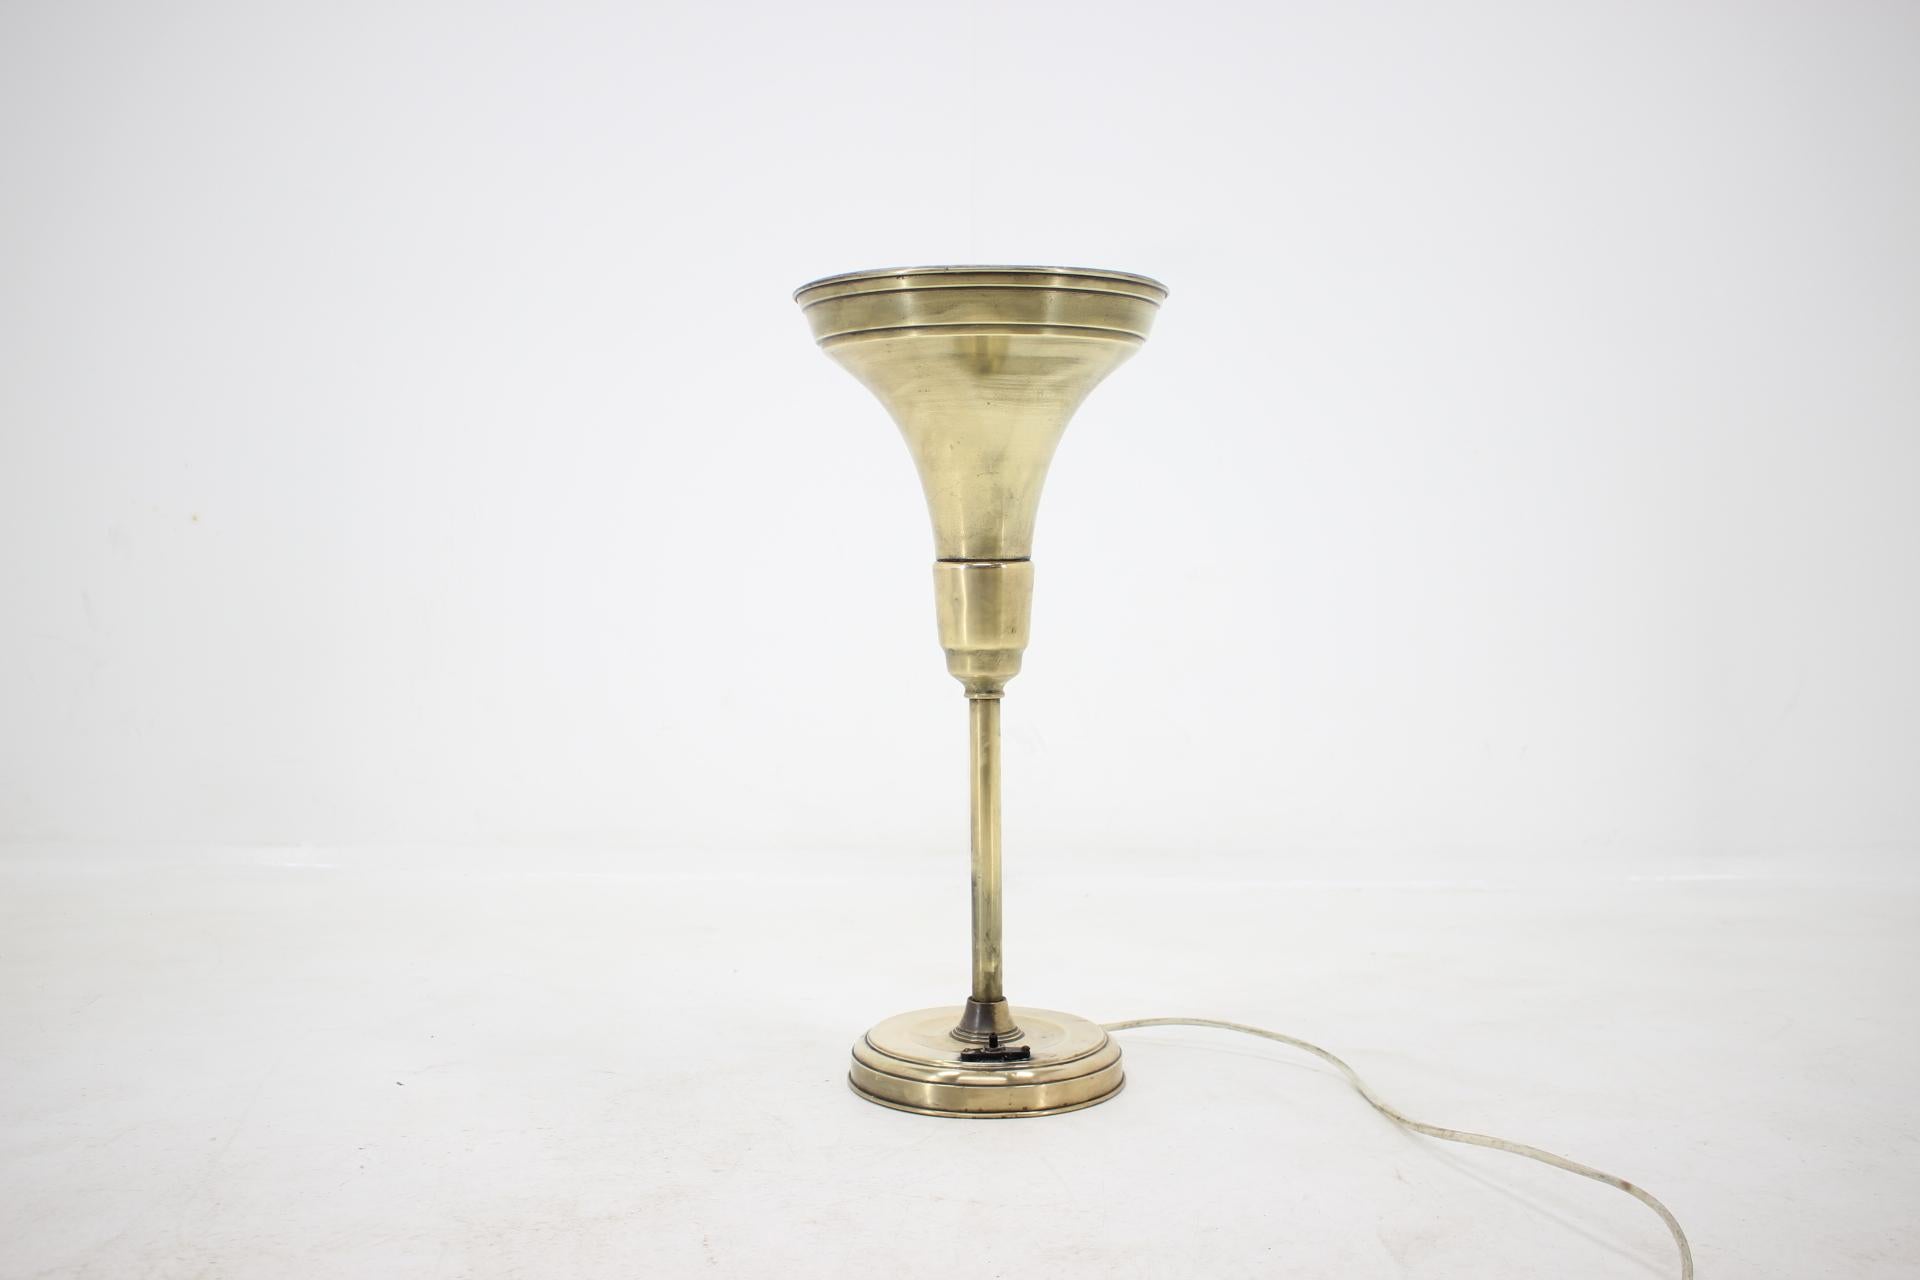 - Bauhaus, Art déco, Fonctionnalisme
- Sol ou table
- Modèle très rare
- Marqué par l'étiquette
Il s'agit d'une lampe de collection du début des années 1900 fabriquée par Albert L. Arenberg, ingénieur électricien et inventeur, qui a créé une